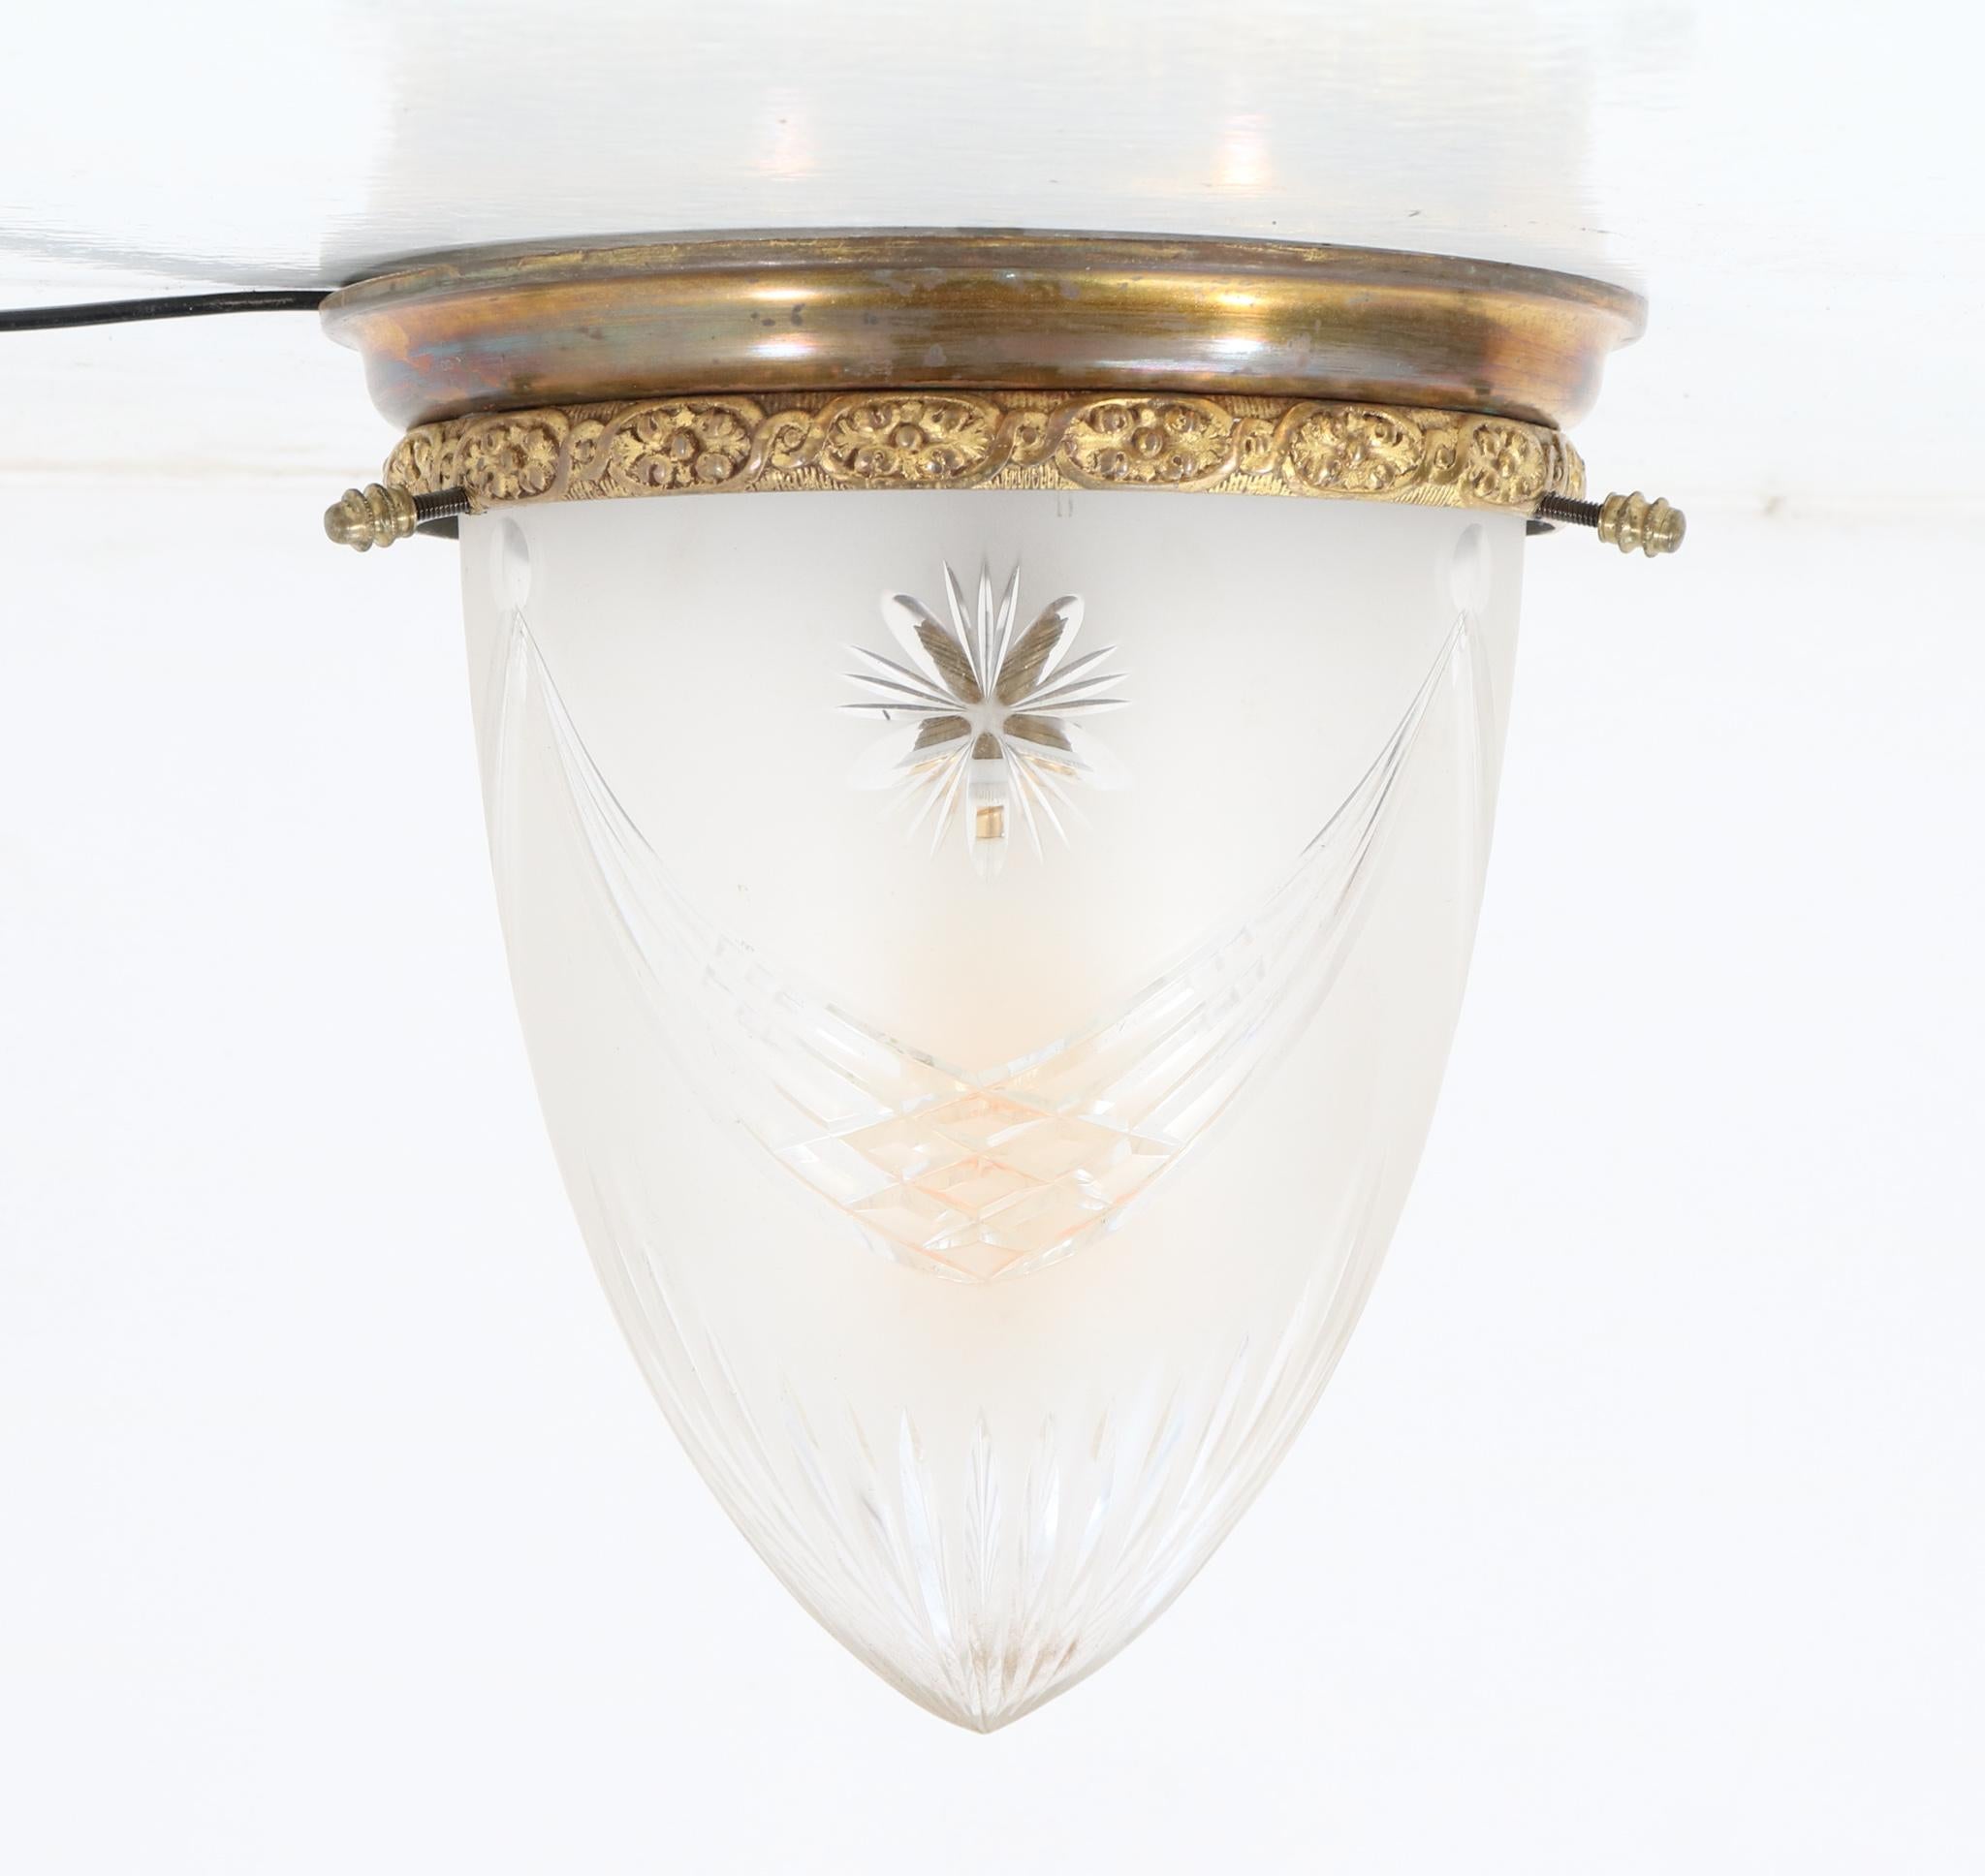 Patinated Bronze French Art Nouveau Cut Blown Glass Flush Mount Ceiling Light 1